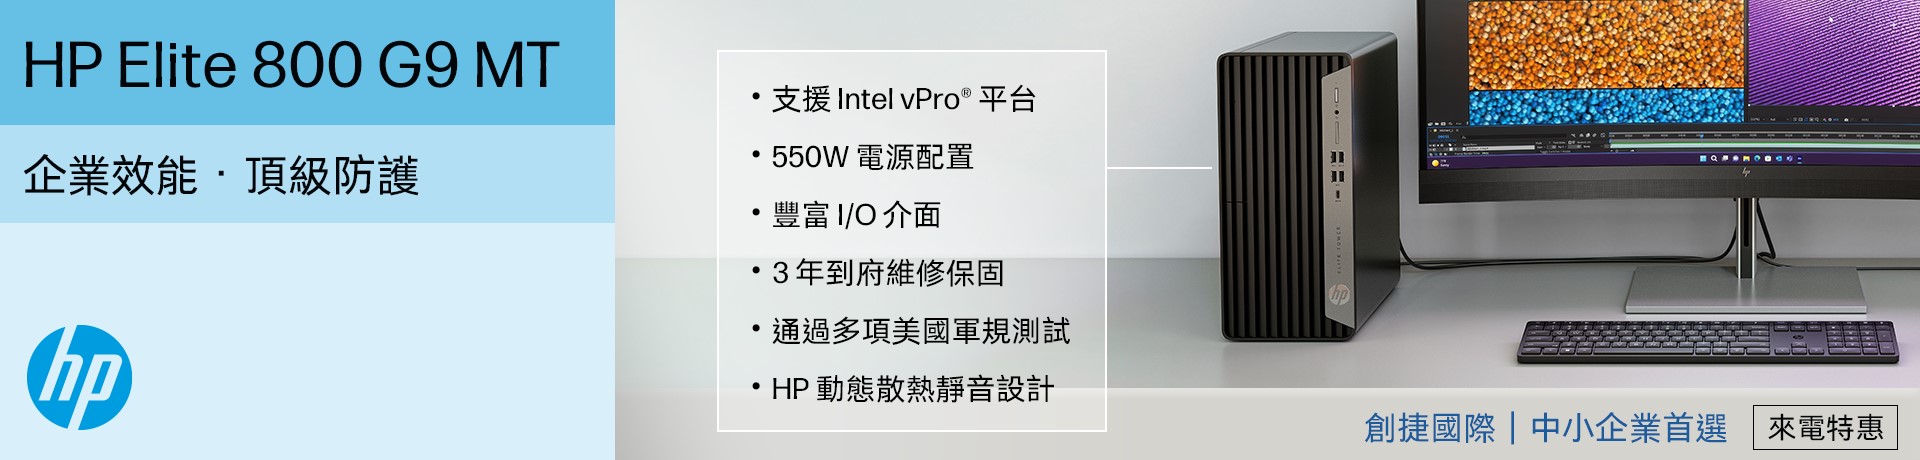 HP商用電腦全系列_800 G9 MT